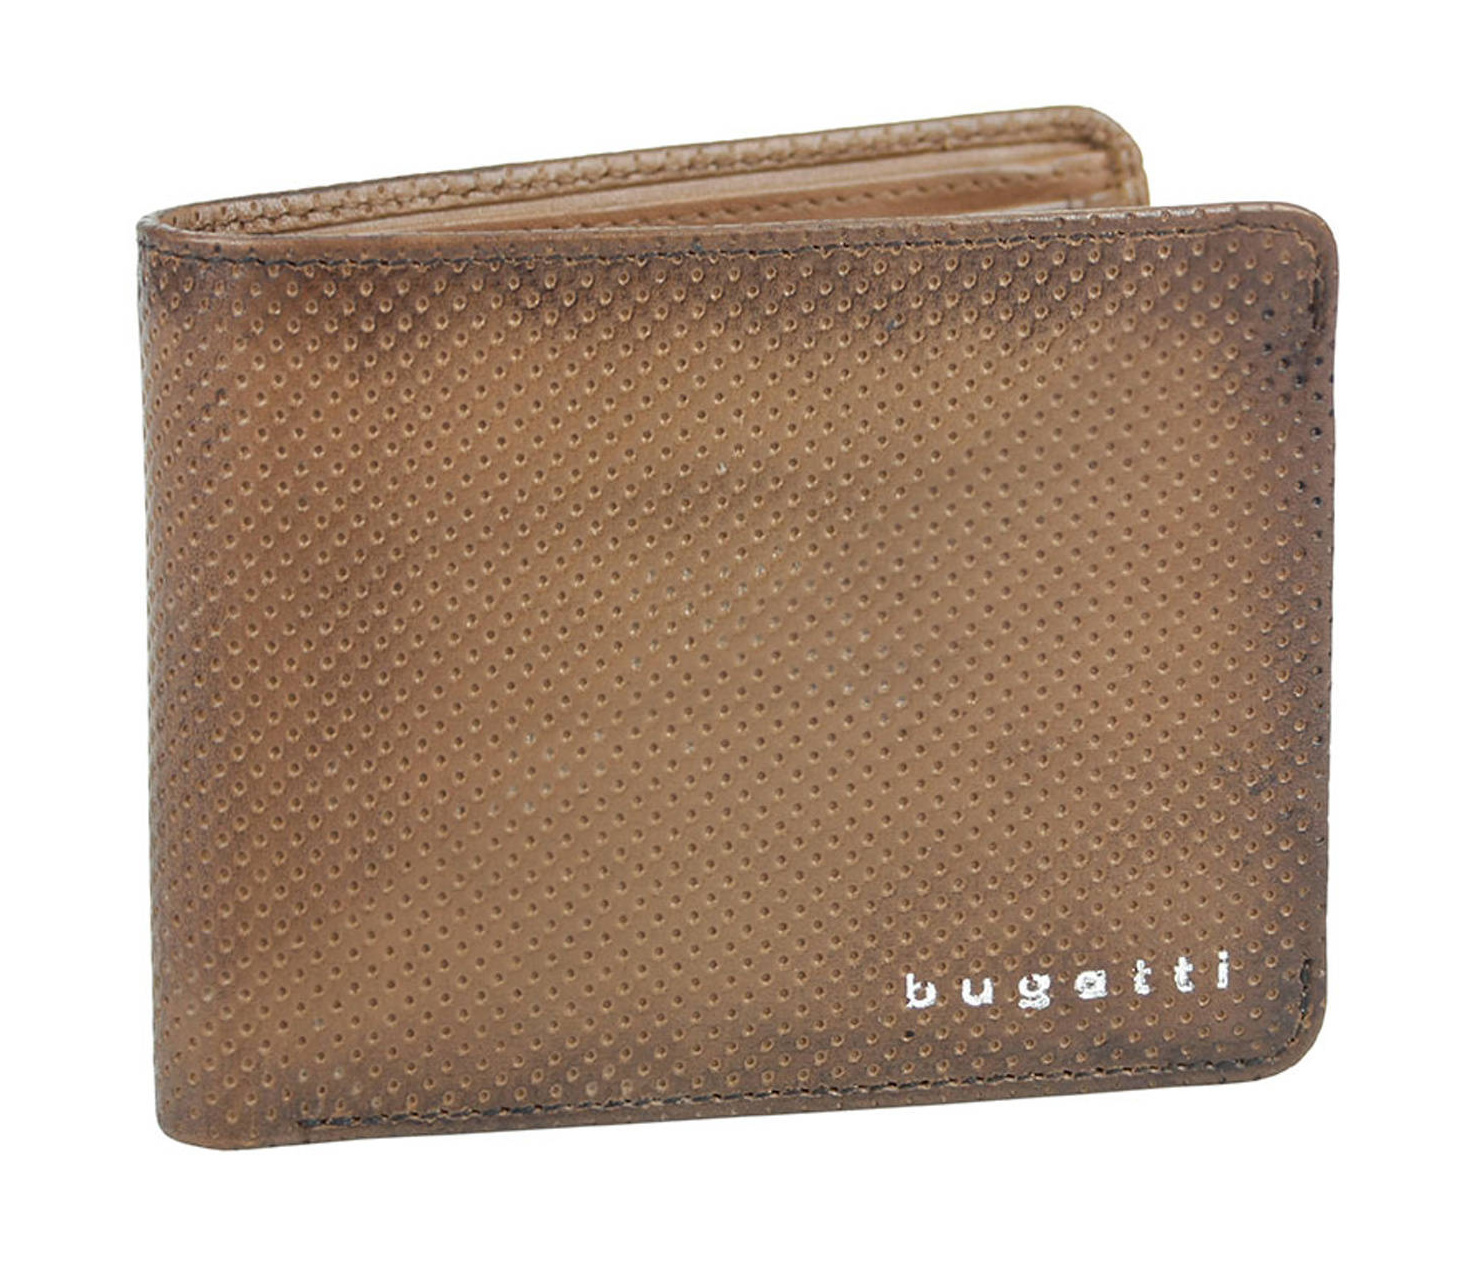 Pánská peněženka Bugatti Perfo flap S 493970-02 hnědá